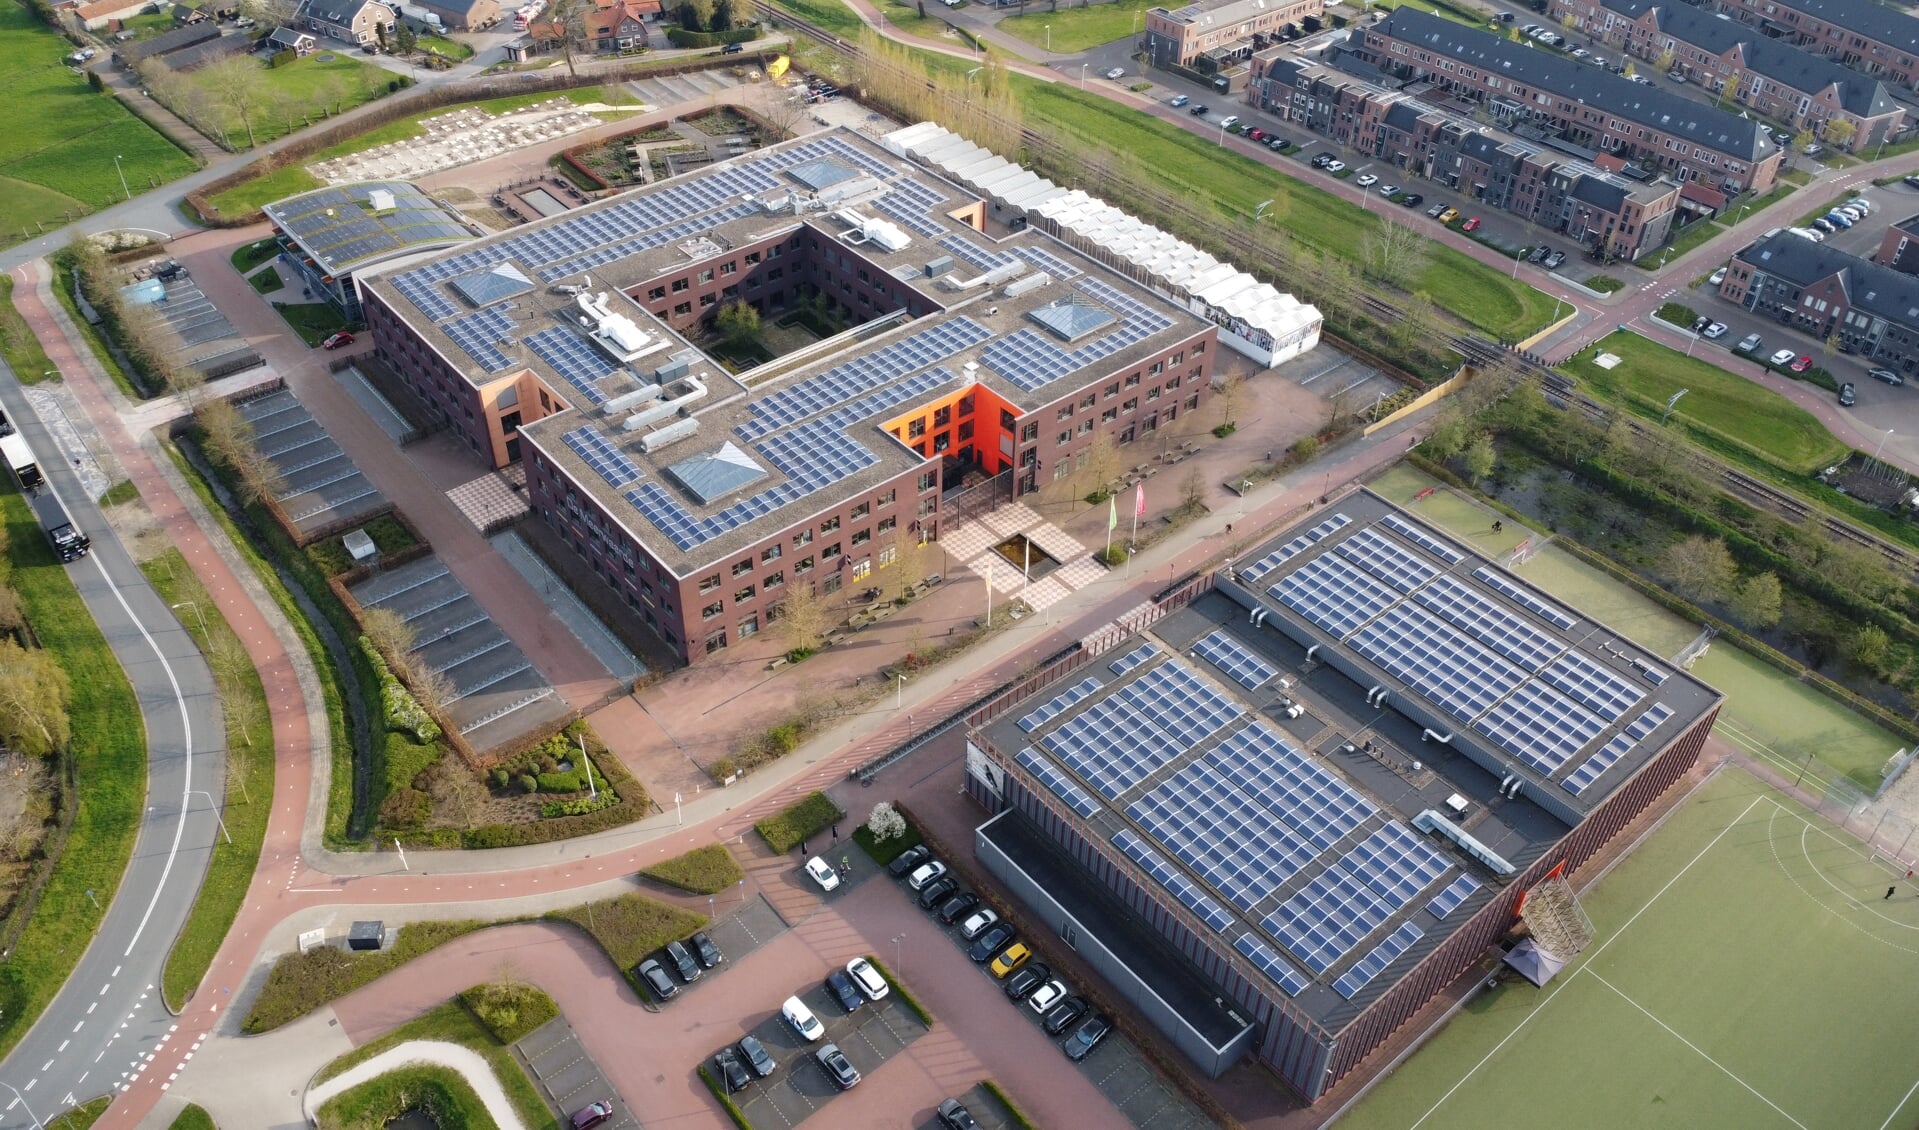 Het dak van MBO school De Meerwaarde in Barneveld ligt vol met zonnepanelen.